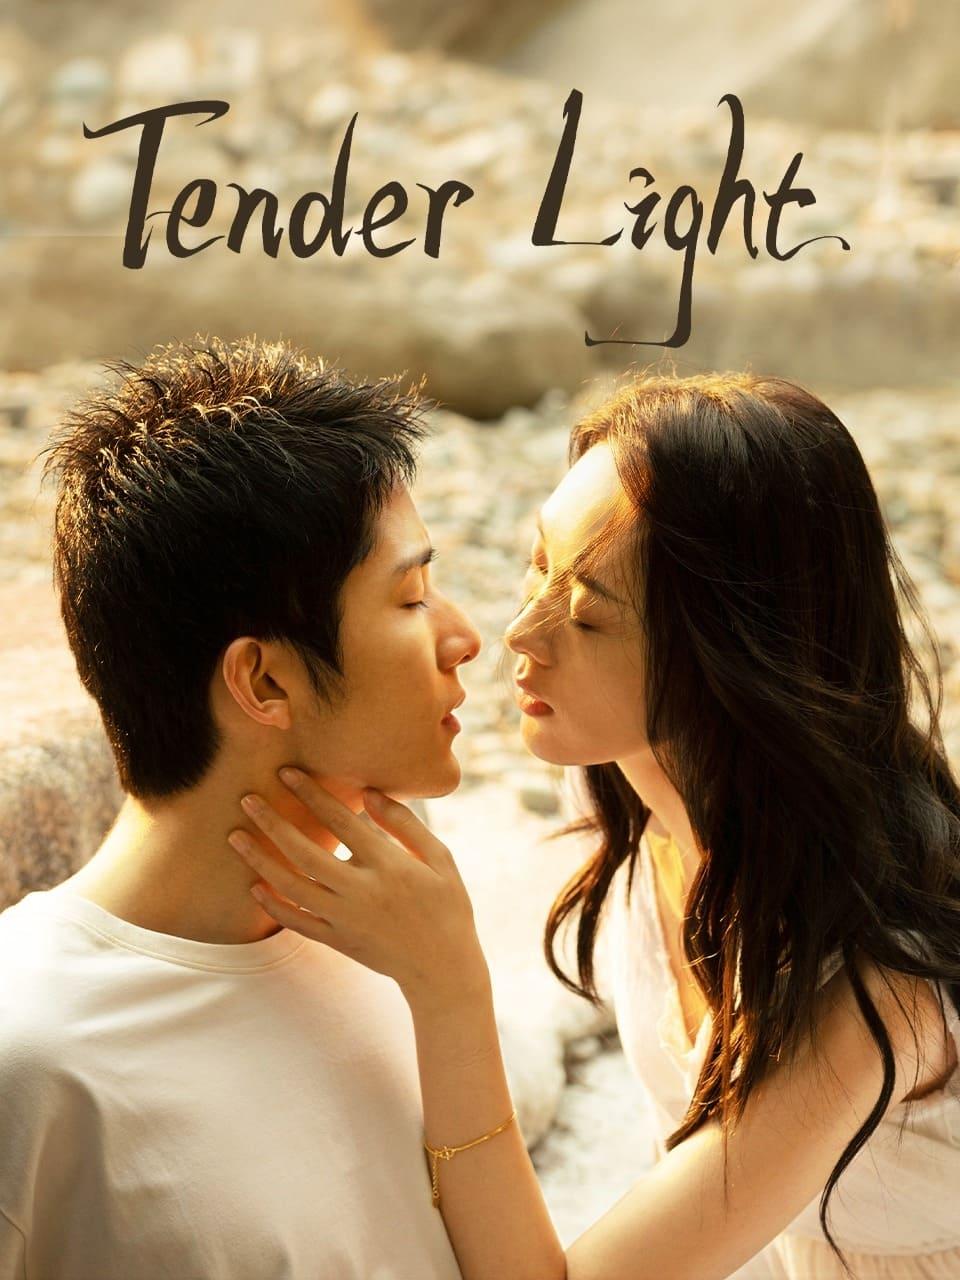 Tender Light poster